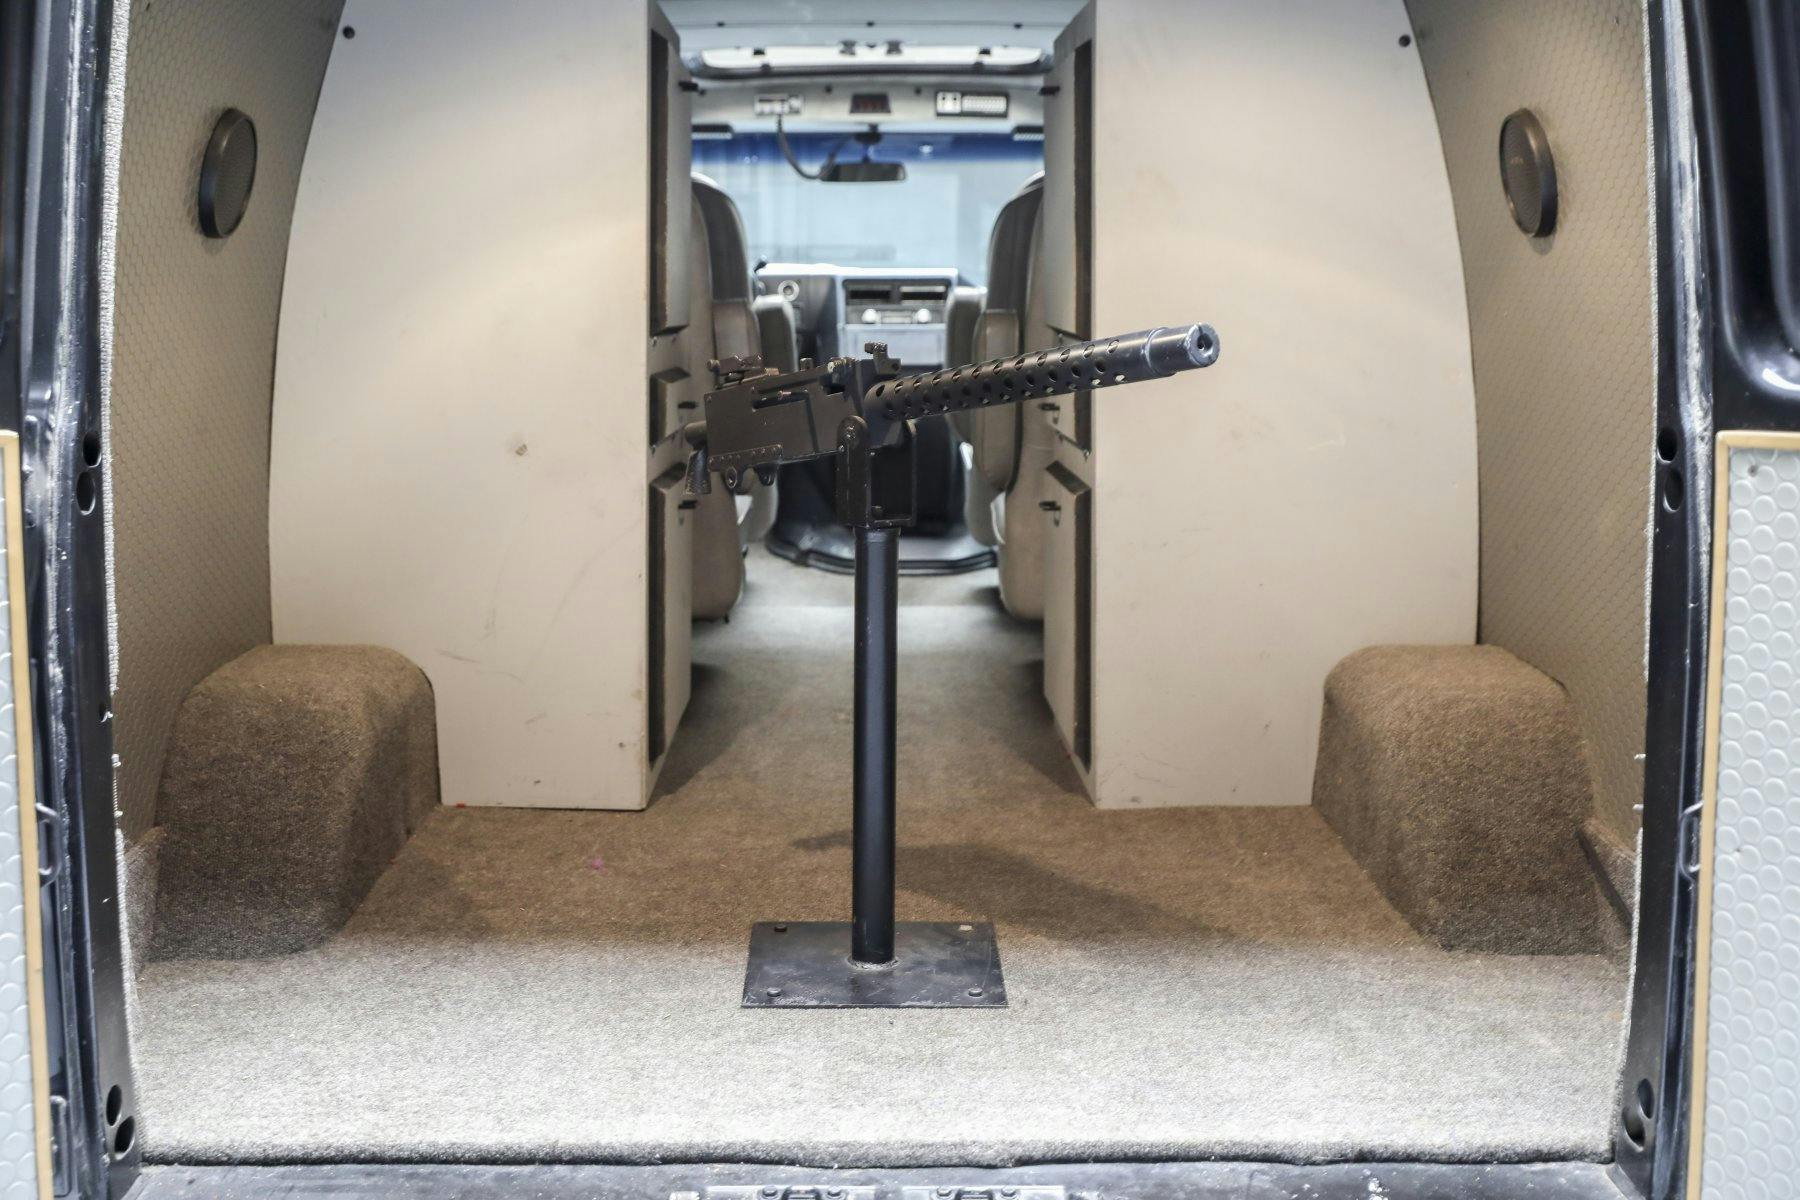 A-Team GMC G-Series 83 Van rear cargo 50 caliber browning gun